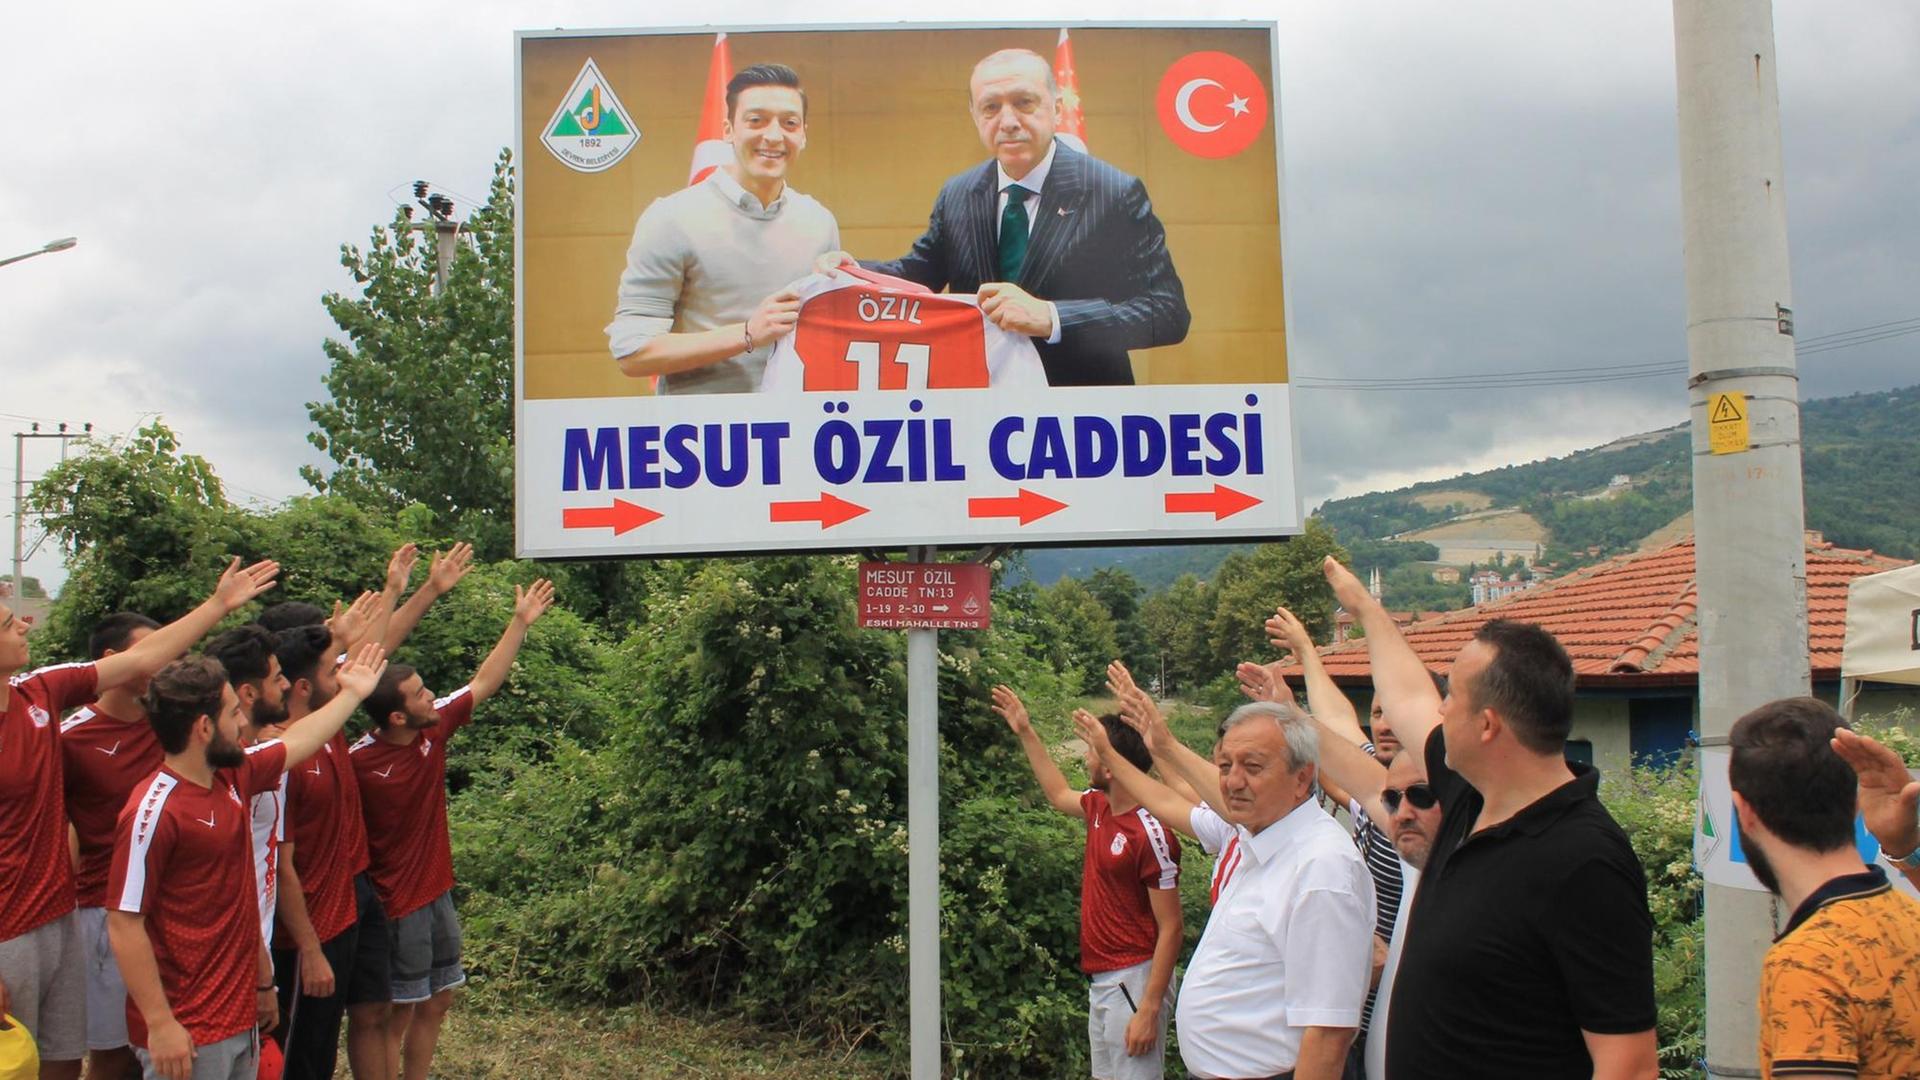 Mehrere Männer auf einer Straße stehen links und rechts neben einem Plakat, das ein gemeinsames Foto von Mesut Özil und dem türkischen Präsidenten Erdogan zeigt.